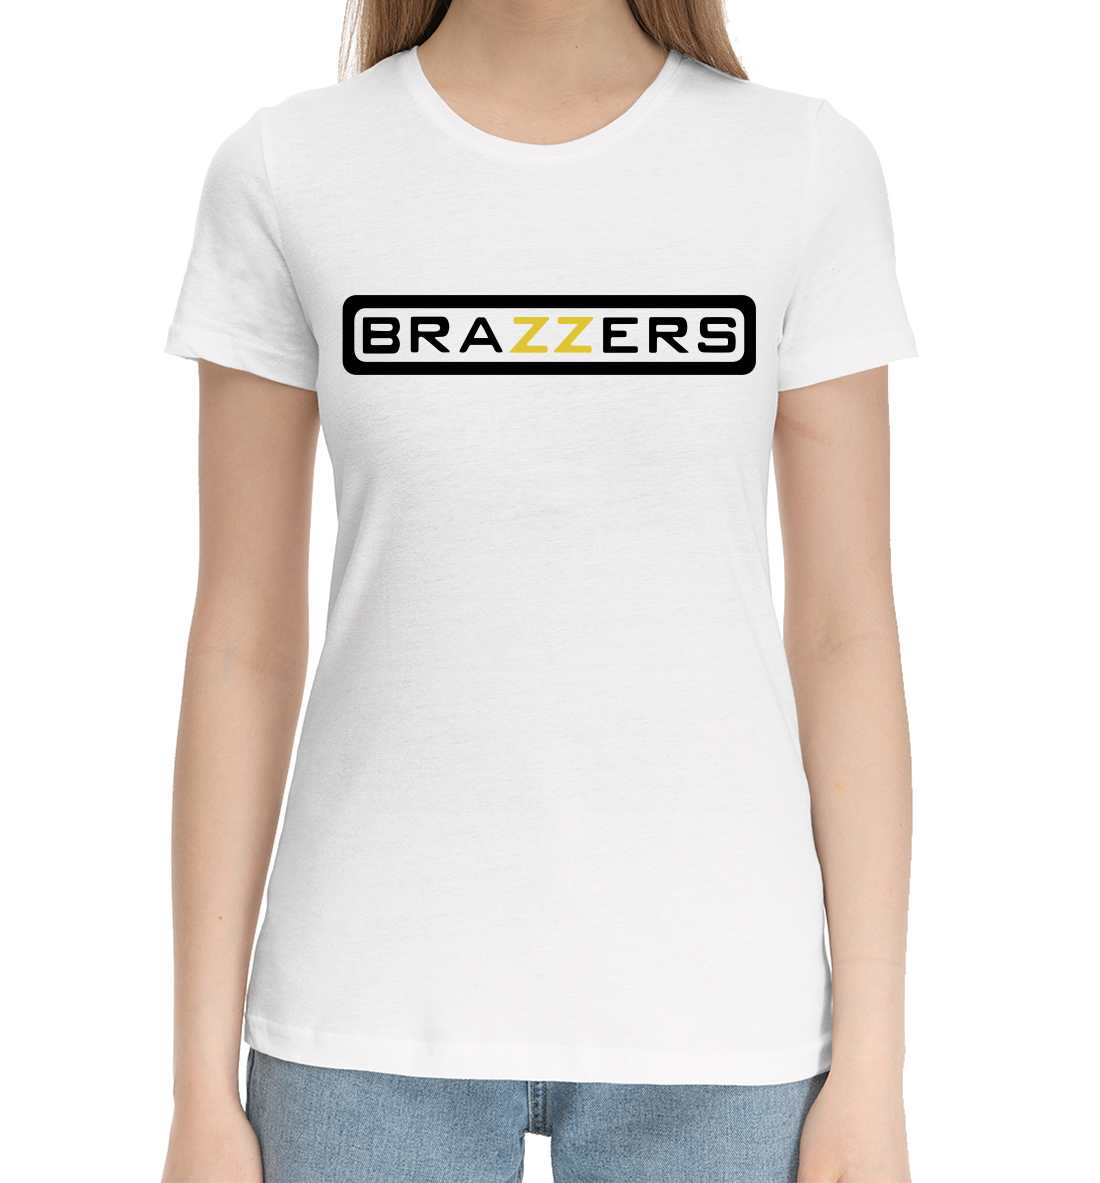 Женская Хлопковая футболка с надписью Brazzers, артикул BRZ-364012-hfu-1mp